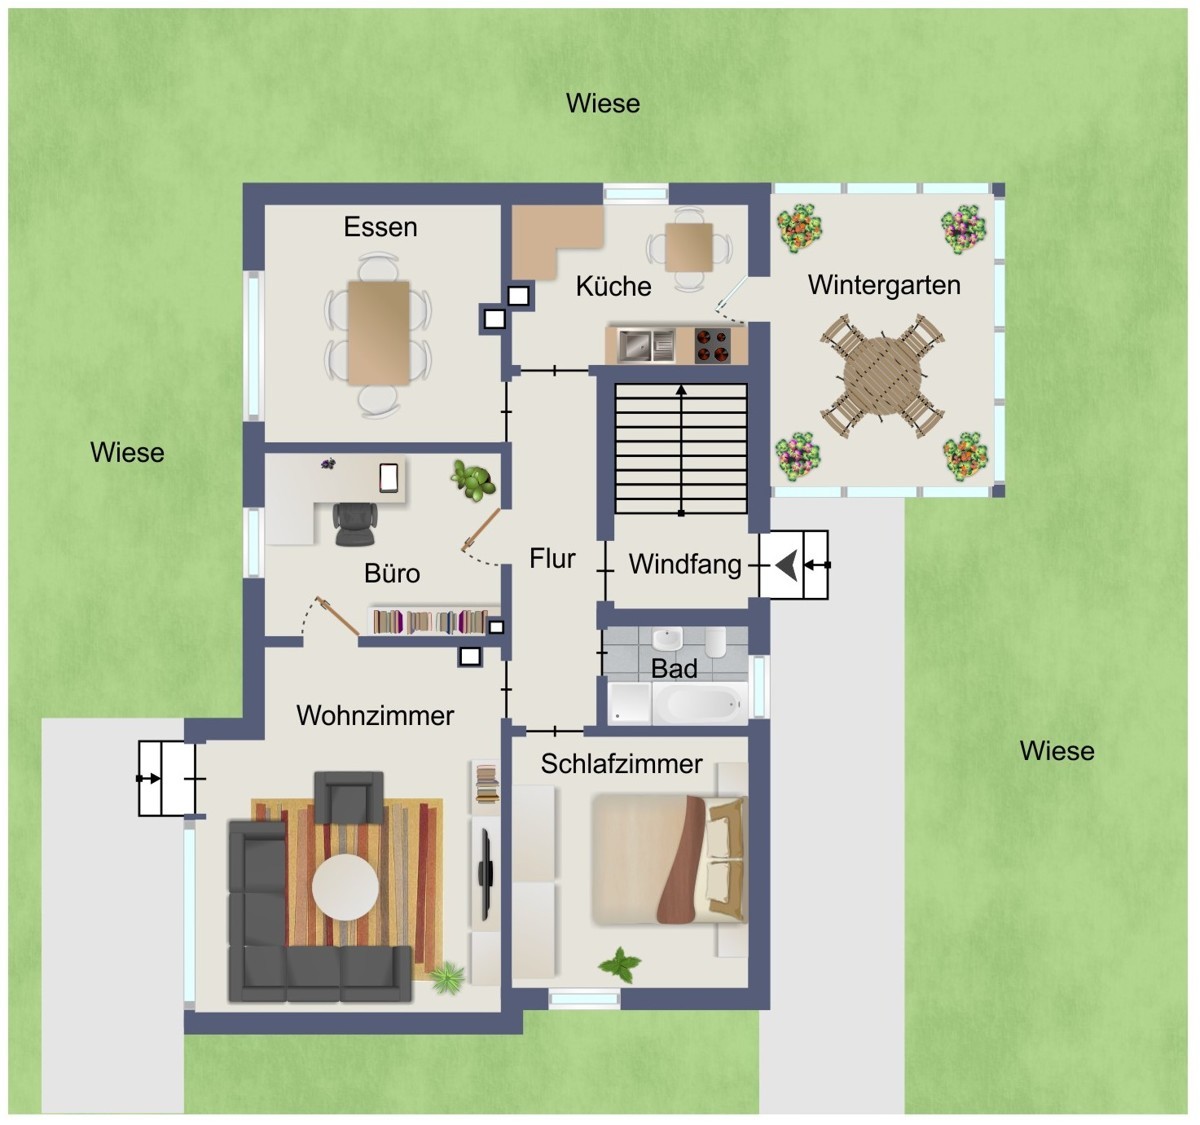 4. Impression der Immobilie Kapitalanlage oder Eigennutzung - Zweifamilienhaus in ruhiger Lage